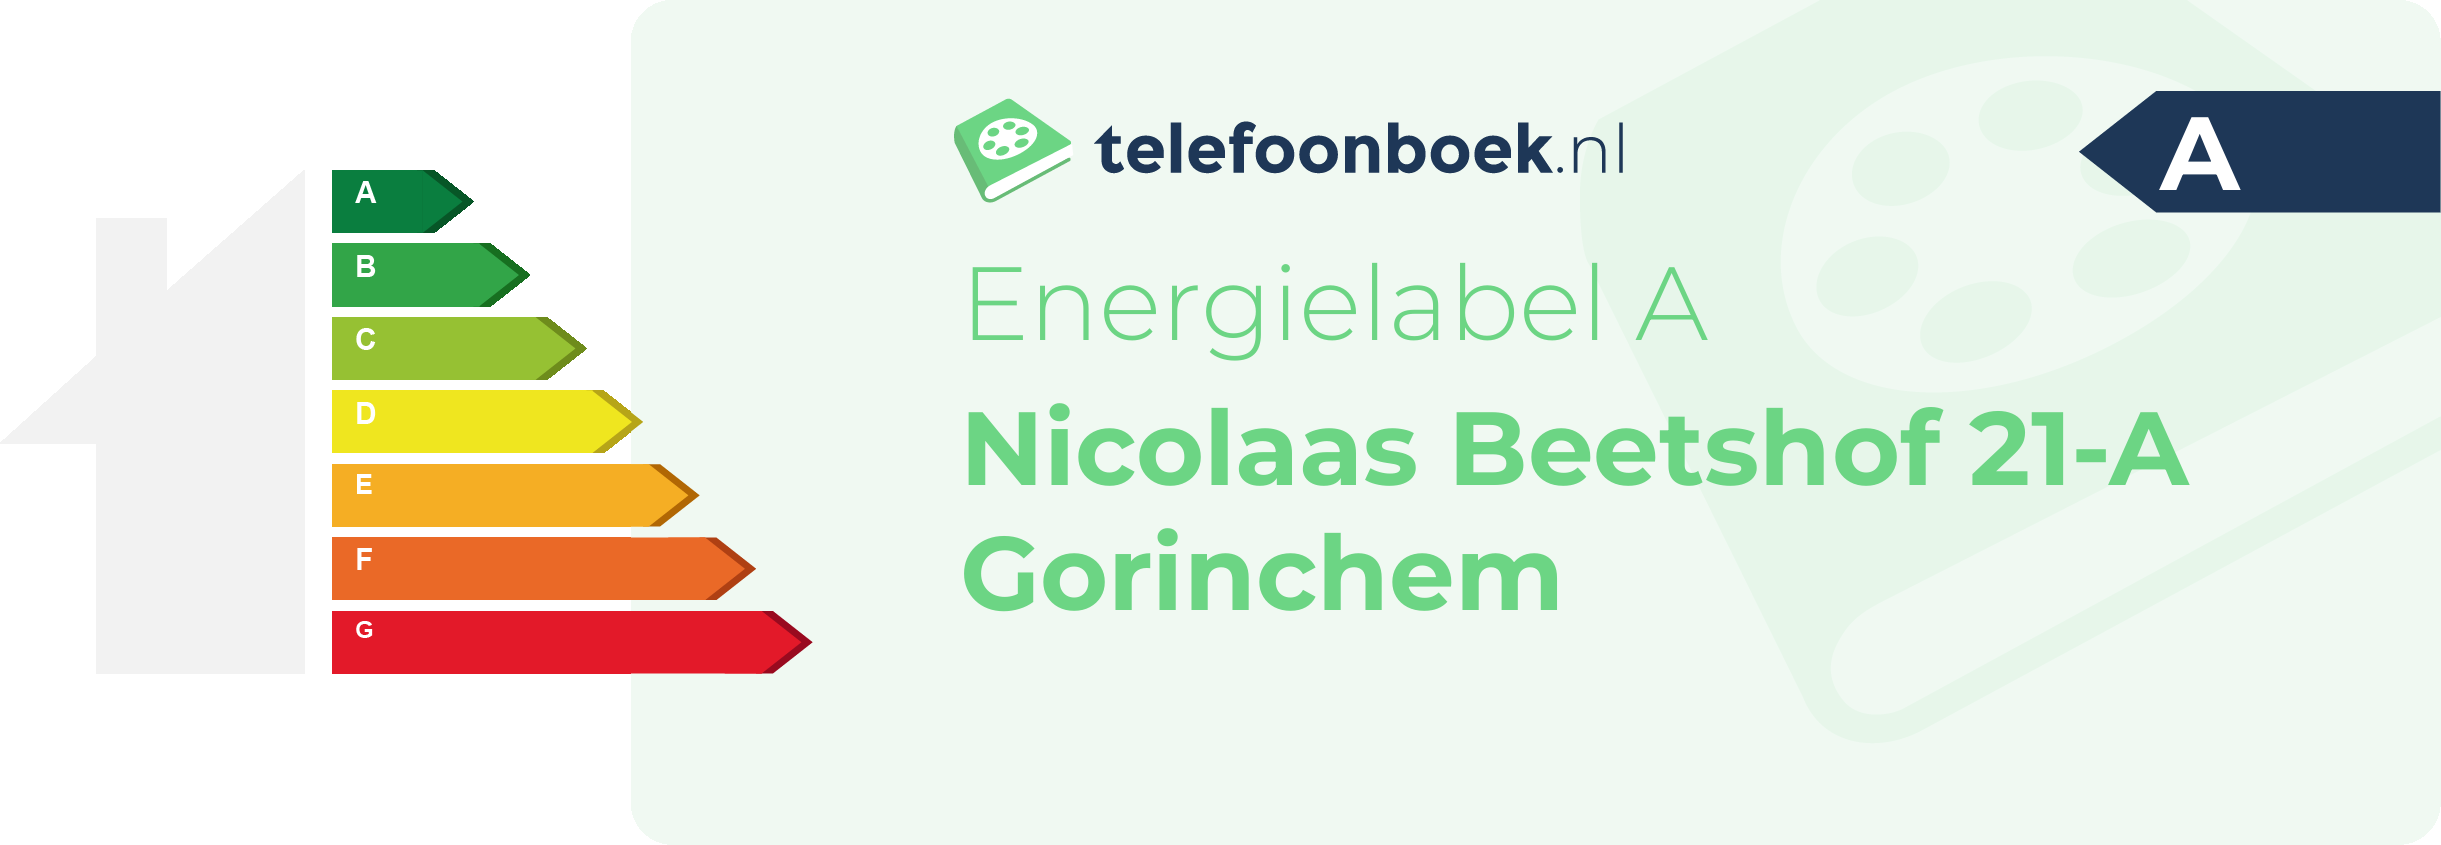 Energielabel Nicolaas Beetshof 21-A Gorinchem